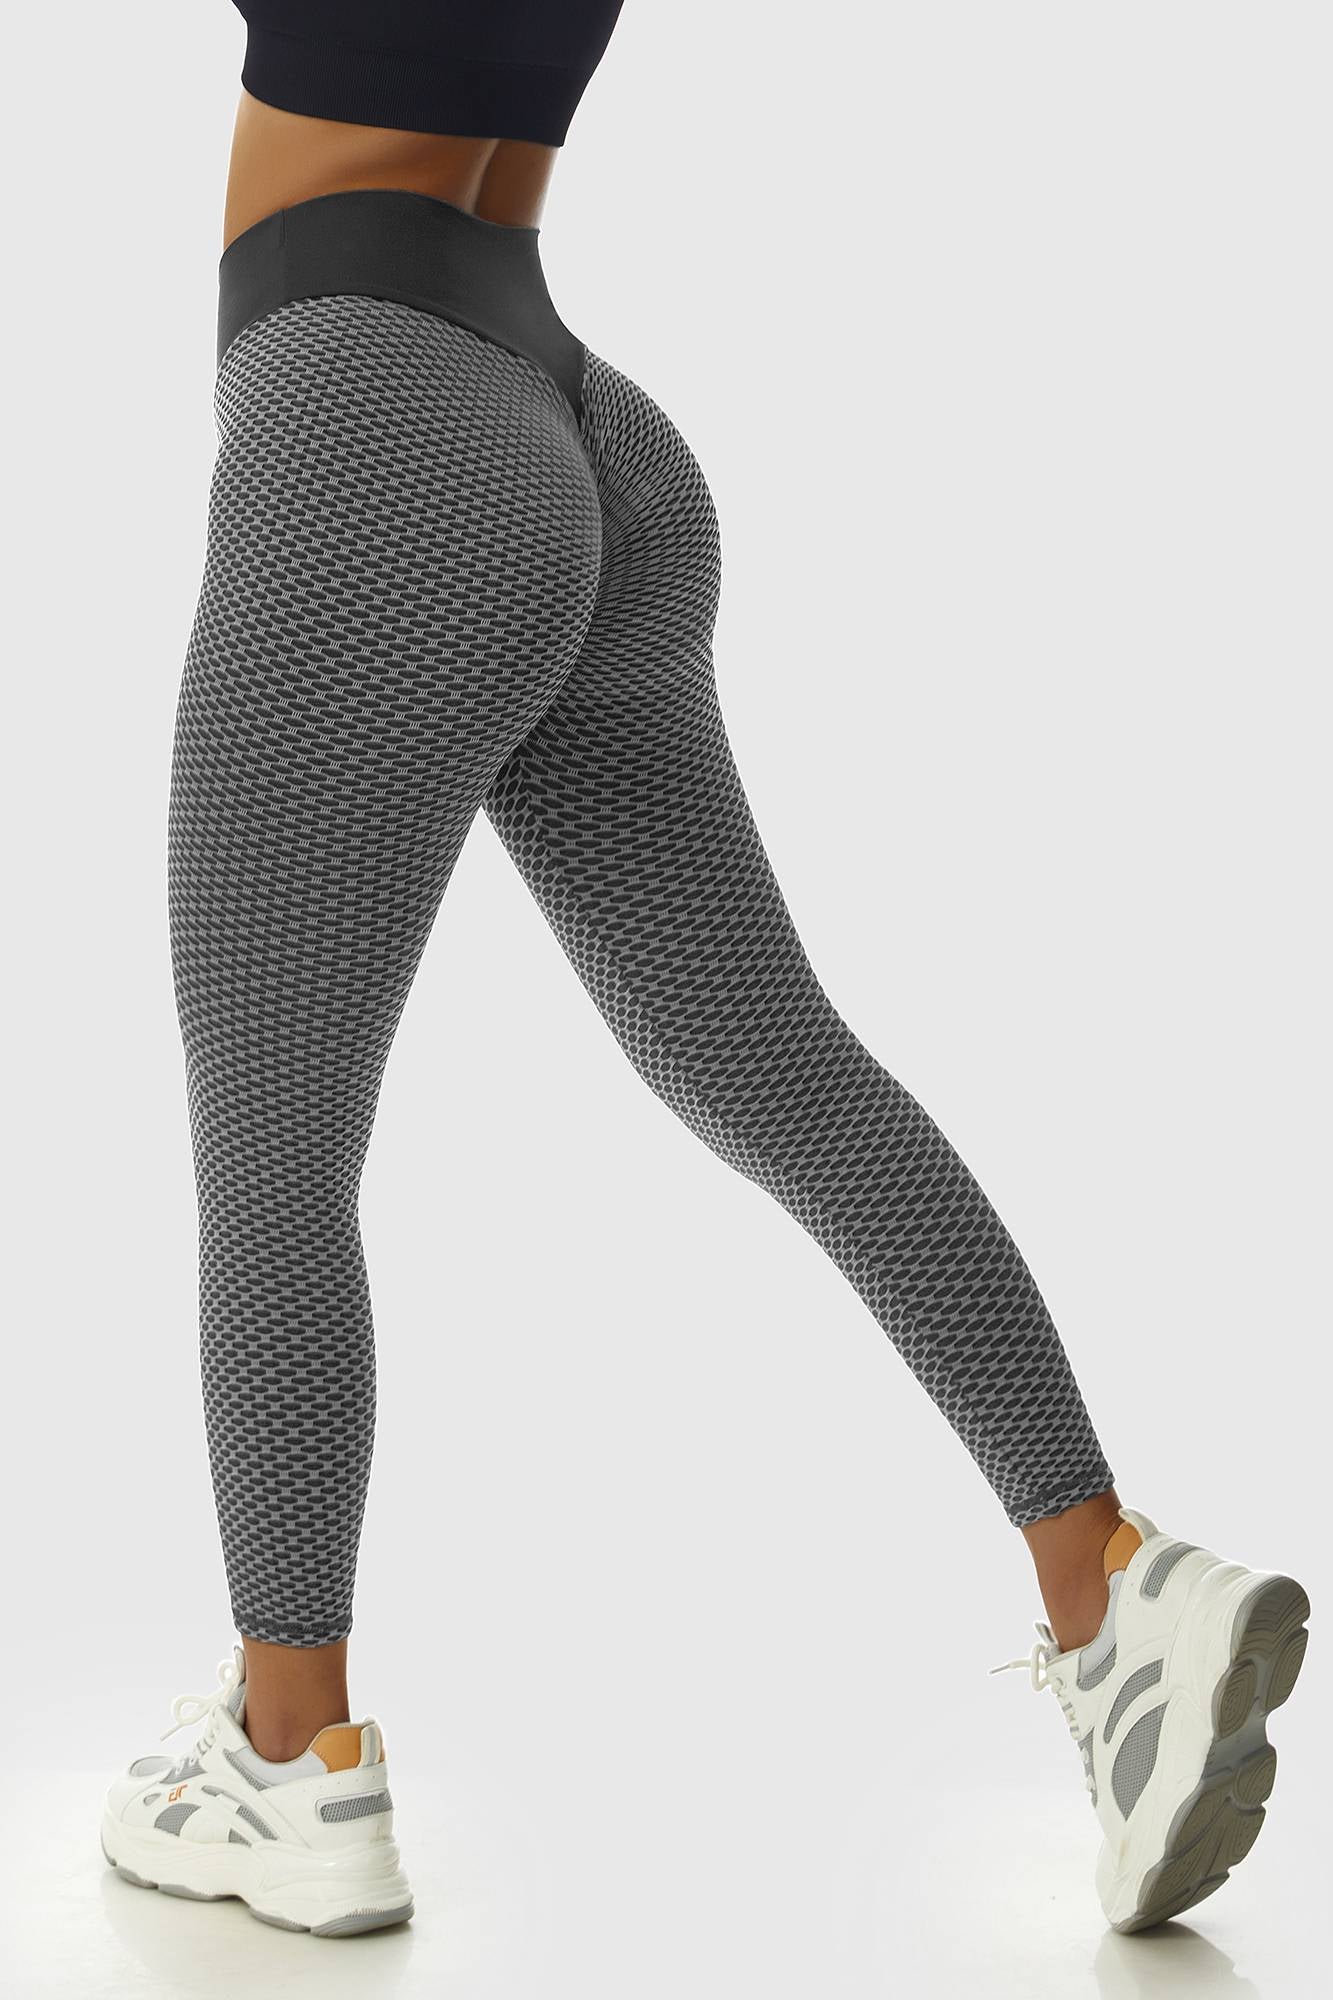 Women's Leggings Butt Lift High Waist Yoga Pants Tiktok Scrunch